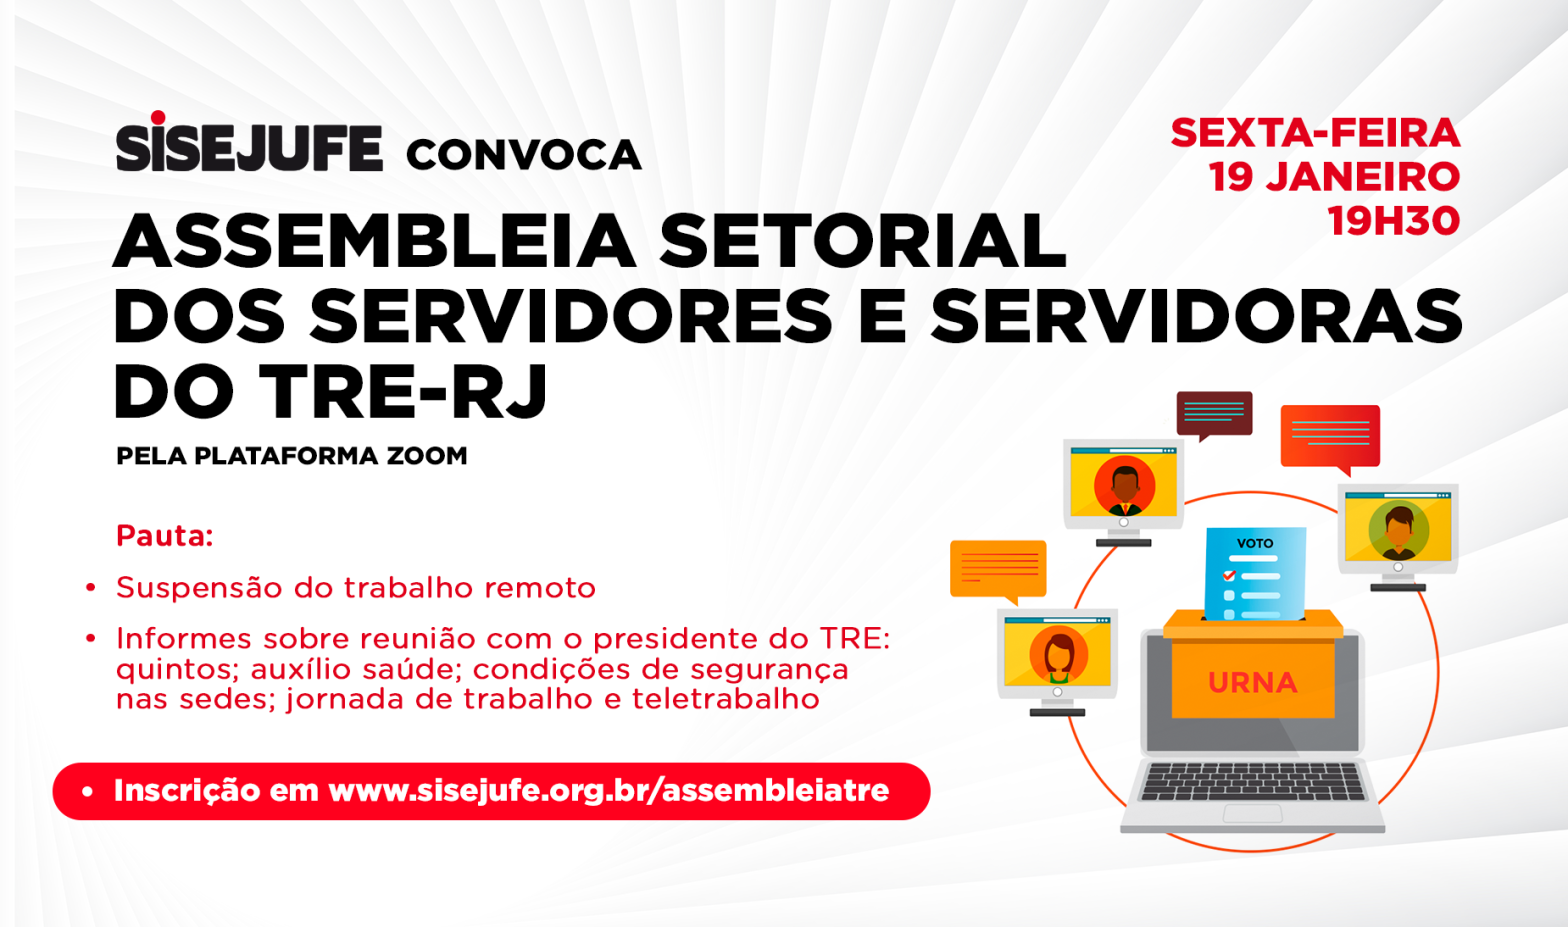 Sisejufe convoca servidores e servidoras do TRE-RJ para Assembleia setorial virtual, nesta sexta, 19/12, às 19h30, SISEJUFE